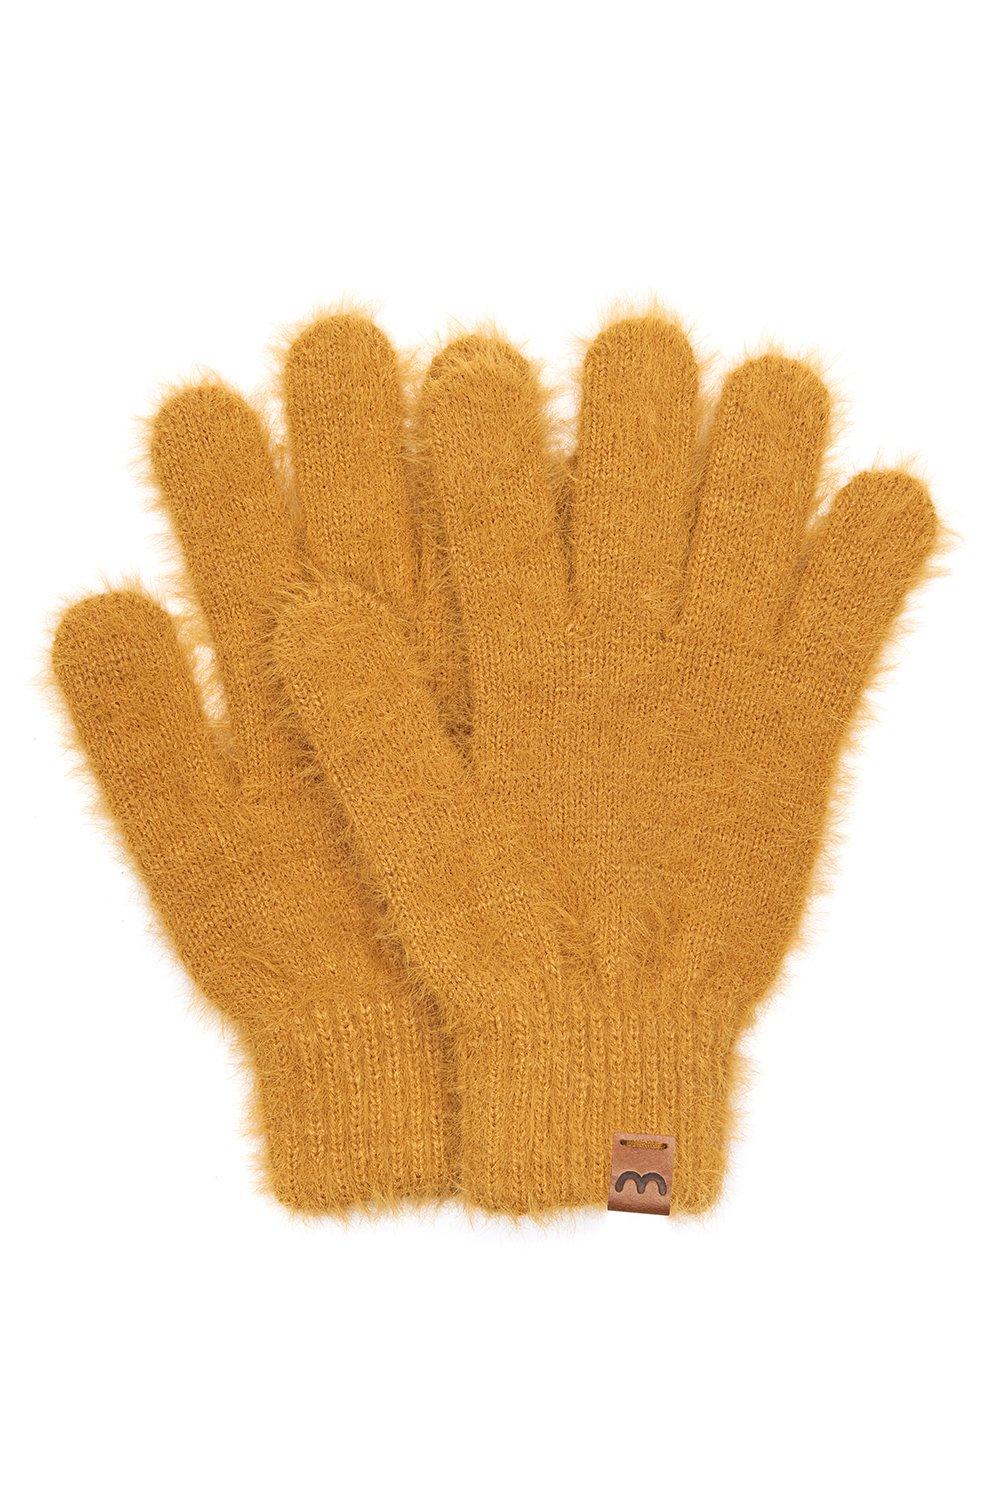 Пушистые перчатки 'Rana Glove' Moshulu, желтый